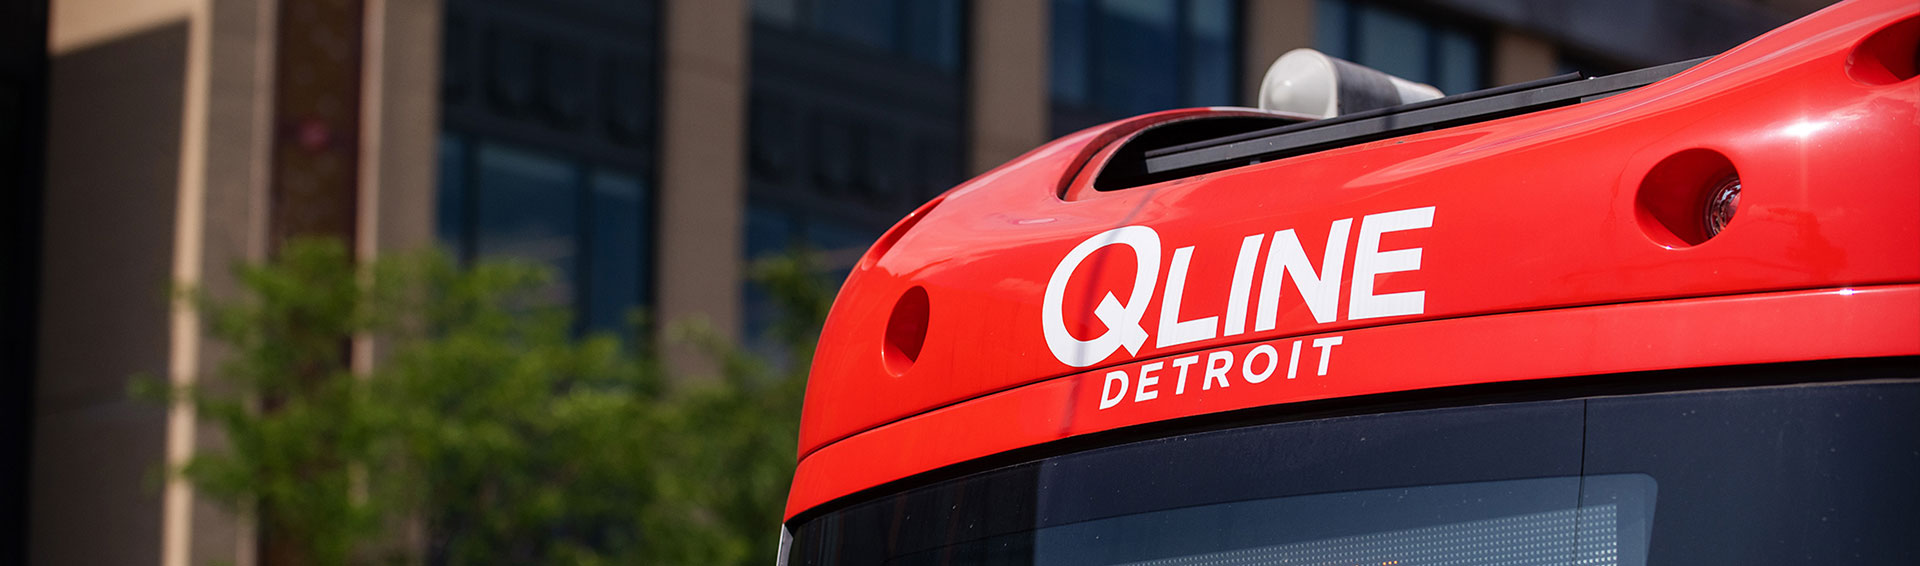 QLINE Detroit - Make a Connection